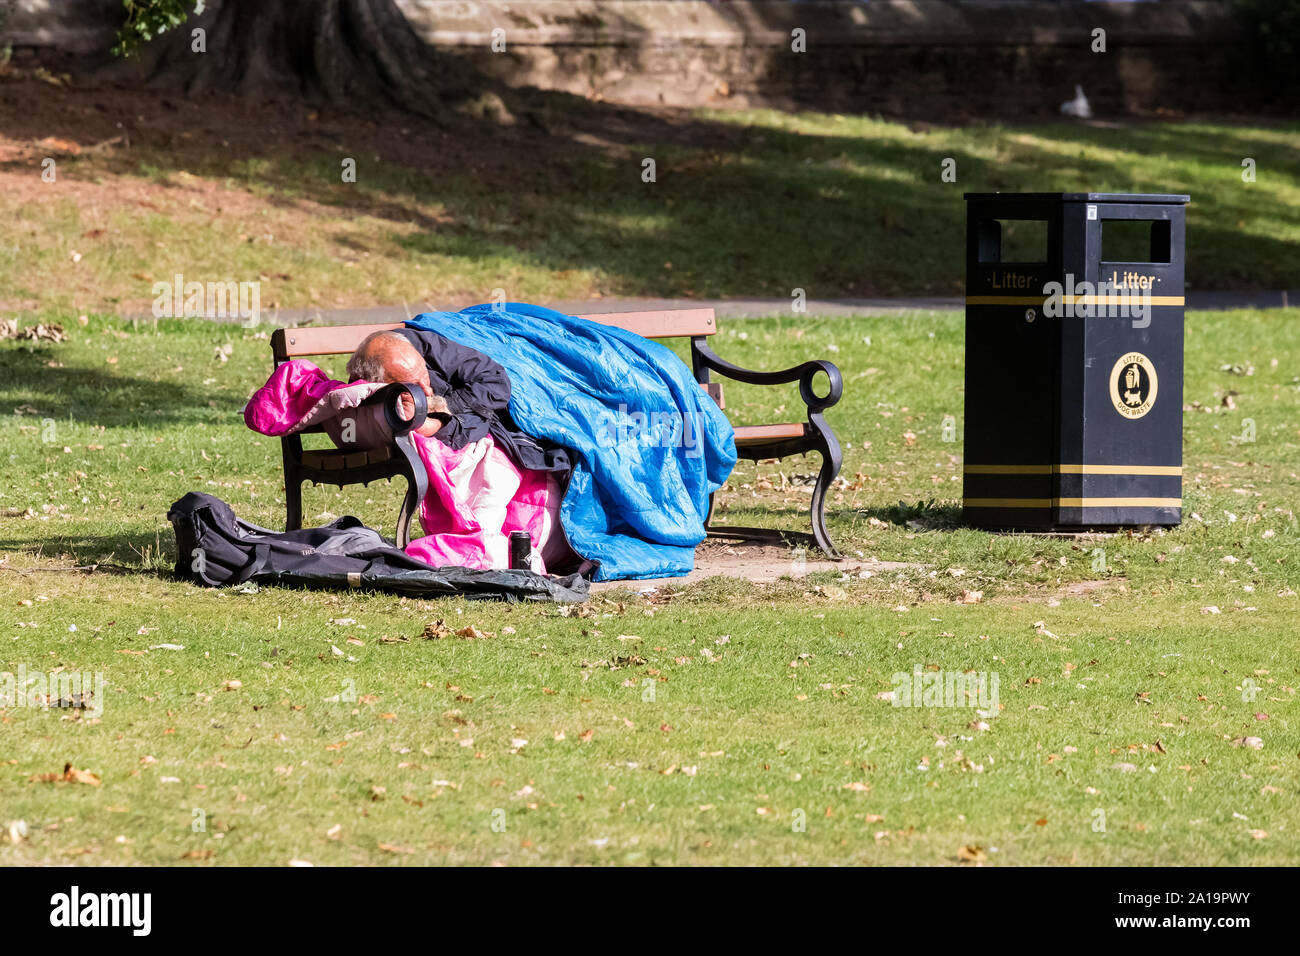 Obdachloser schlafend in seinem Schlafsack auf einer Bank im Park Stockfoto